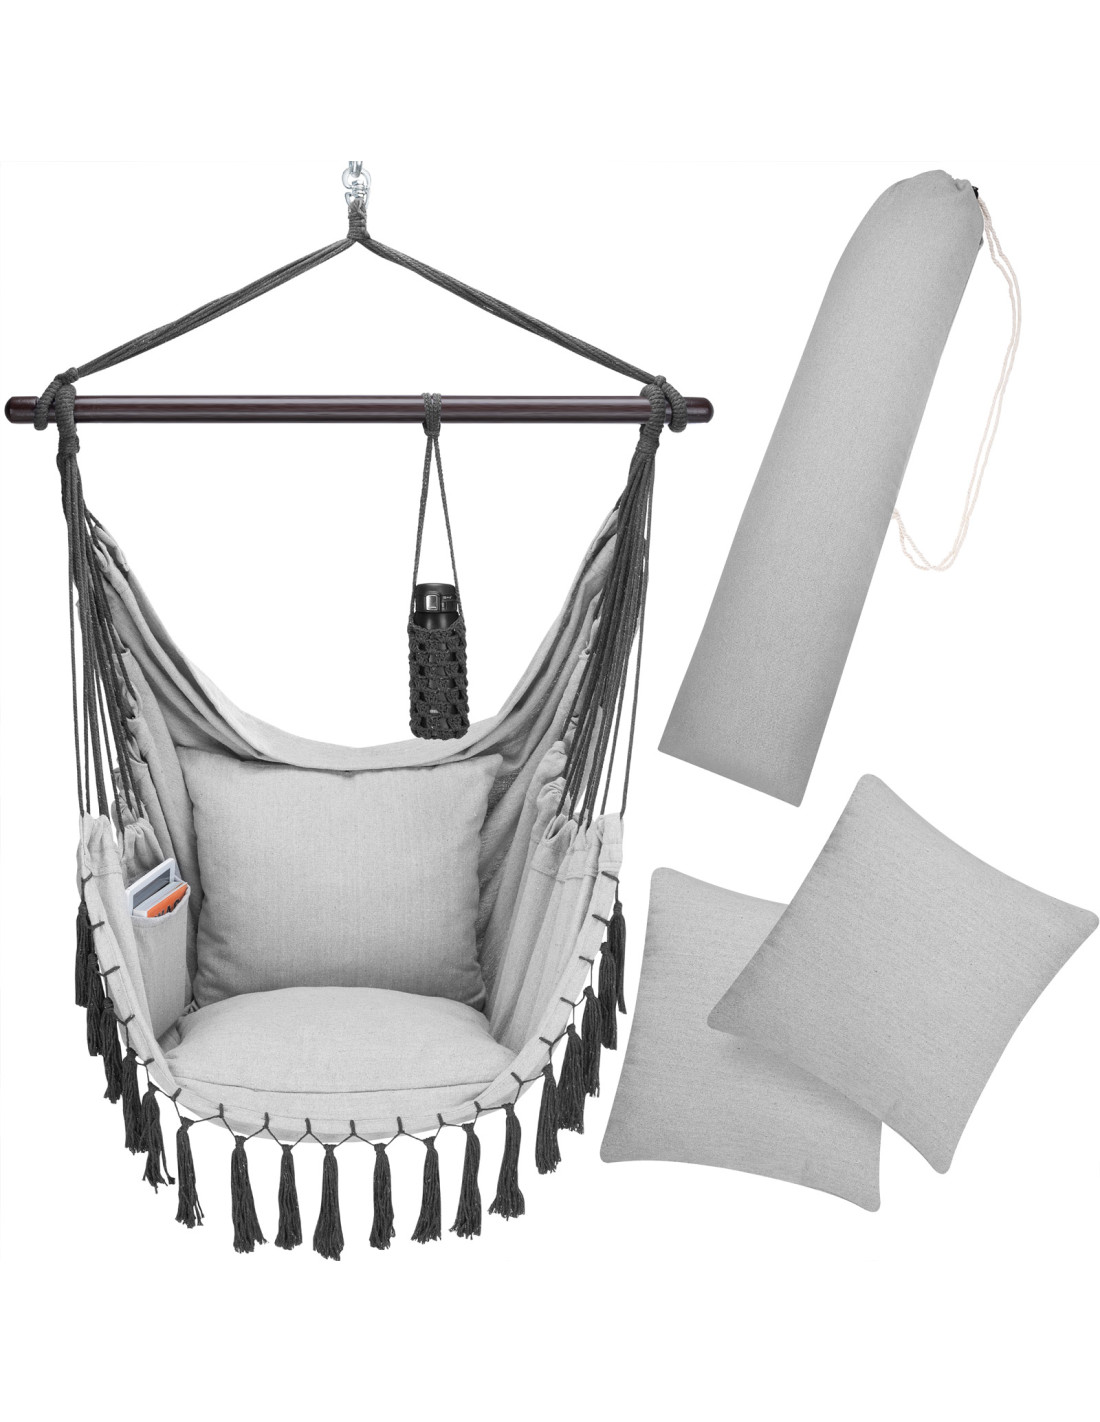 Sangle de chaise hamac extérieure, kit de suspension de chaise hamac,  matériel d'installation de hamac, support de balançoire pour chaise  suspendue, matériel de hamac d'arbre -  France